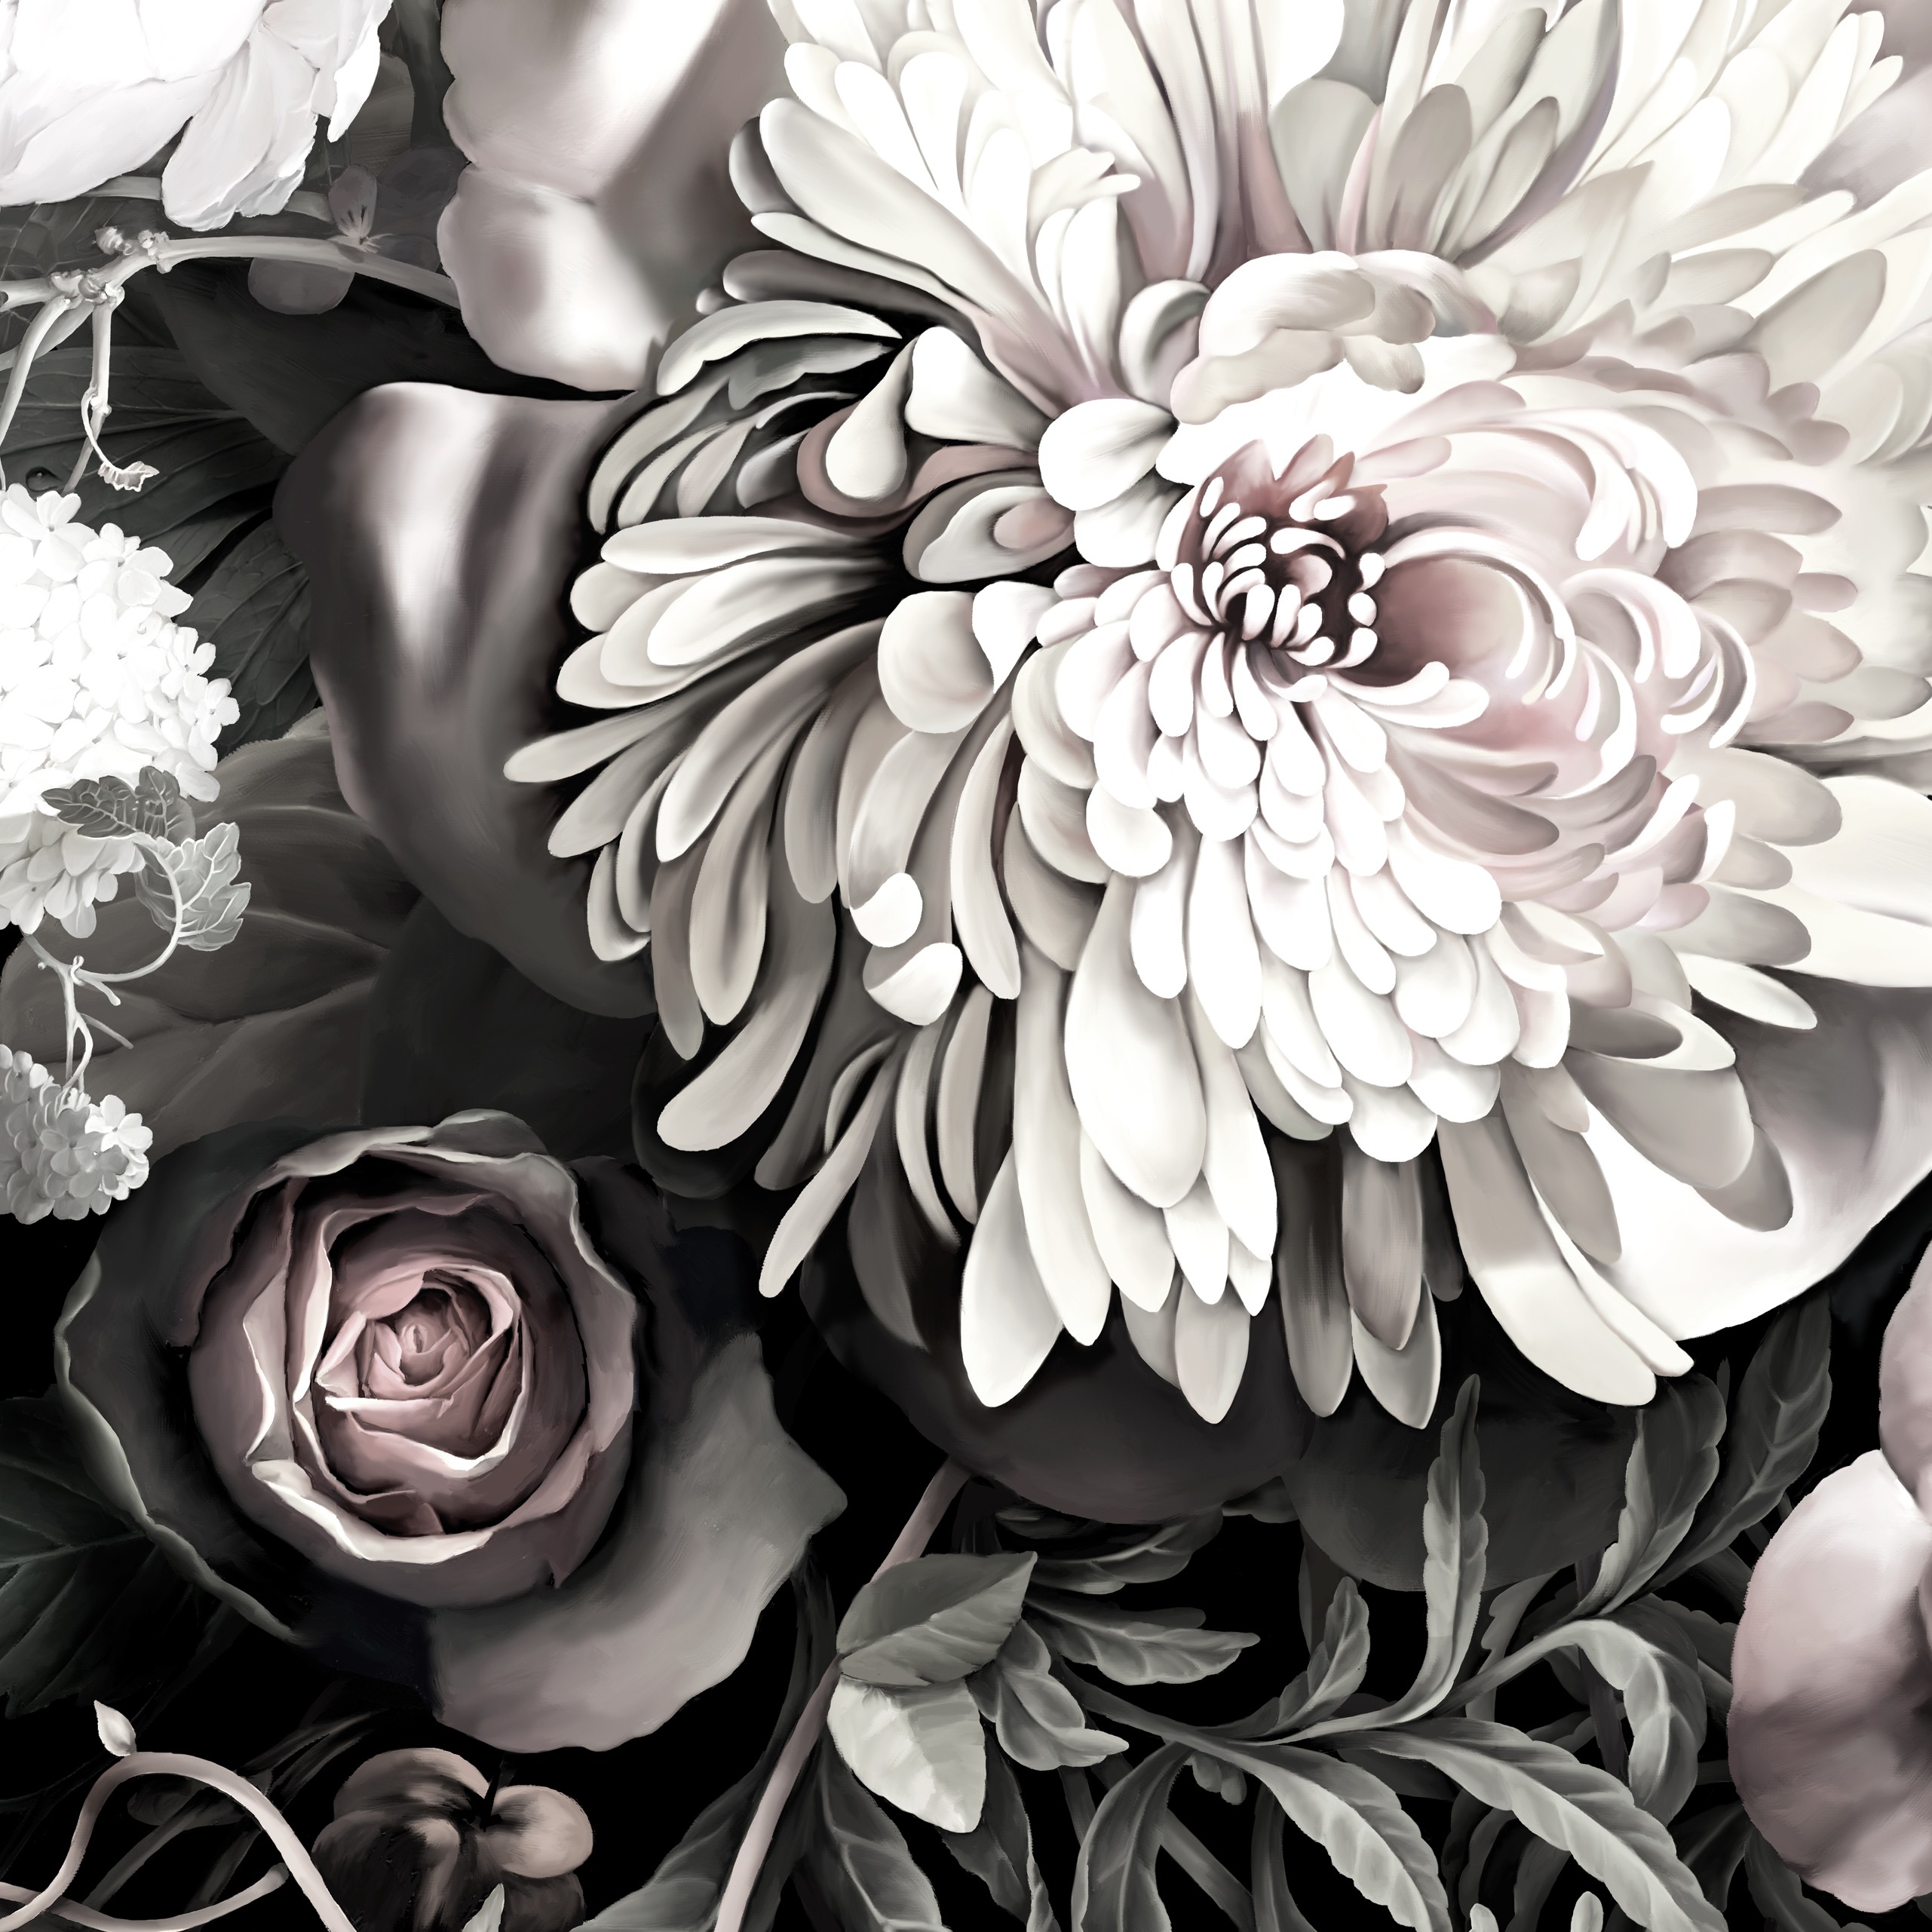 Sample Floral Wallpaper Samples By Ellie Cashman Design